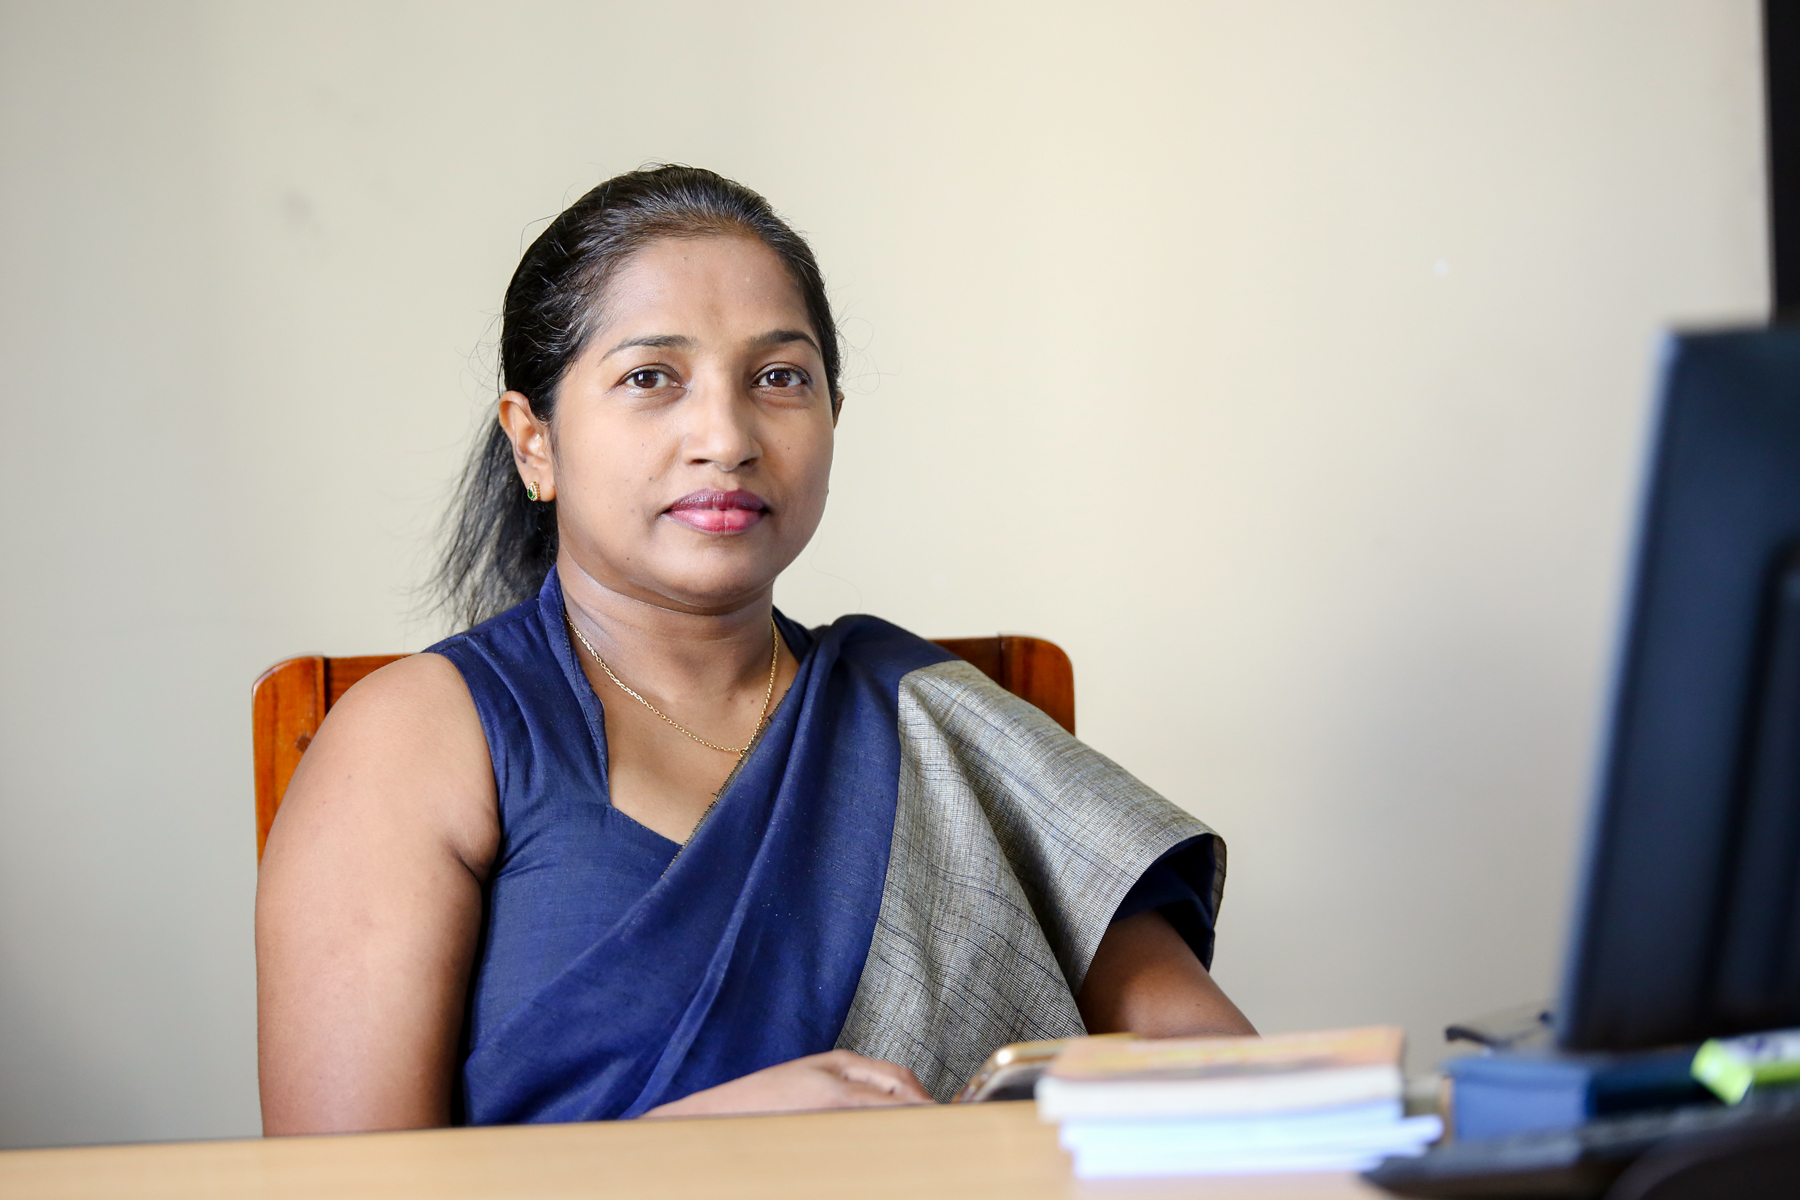 Dr. Kumari Priyanka Jayasooriya Menike.